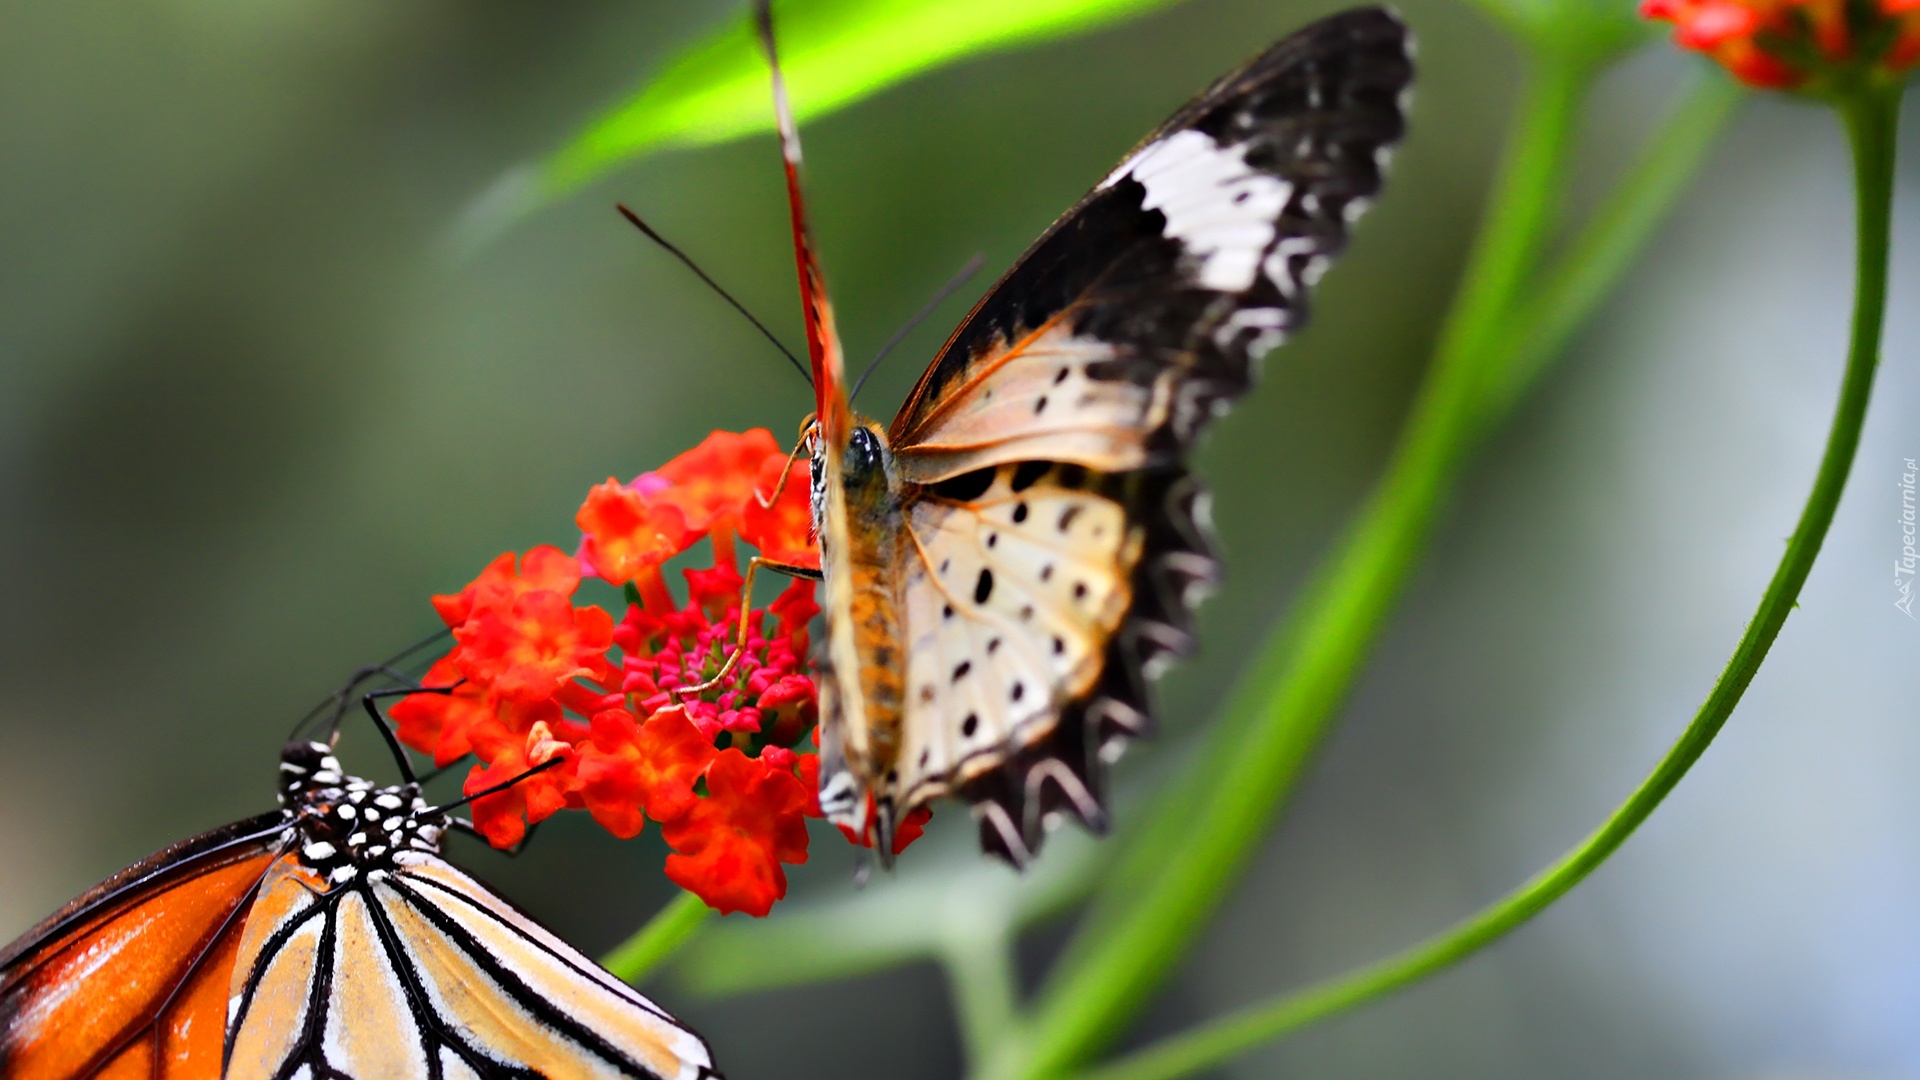 Motyle, Kwiatek, Łodyżki